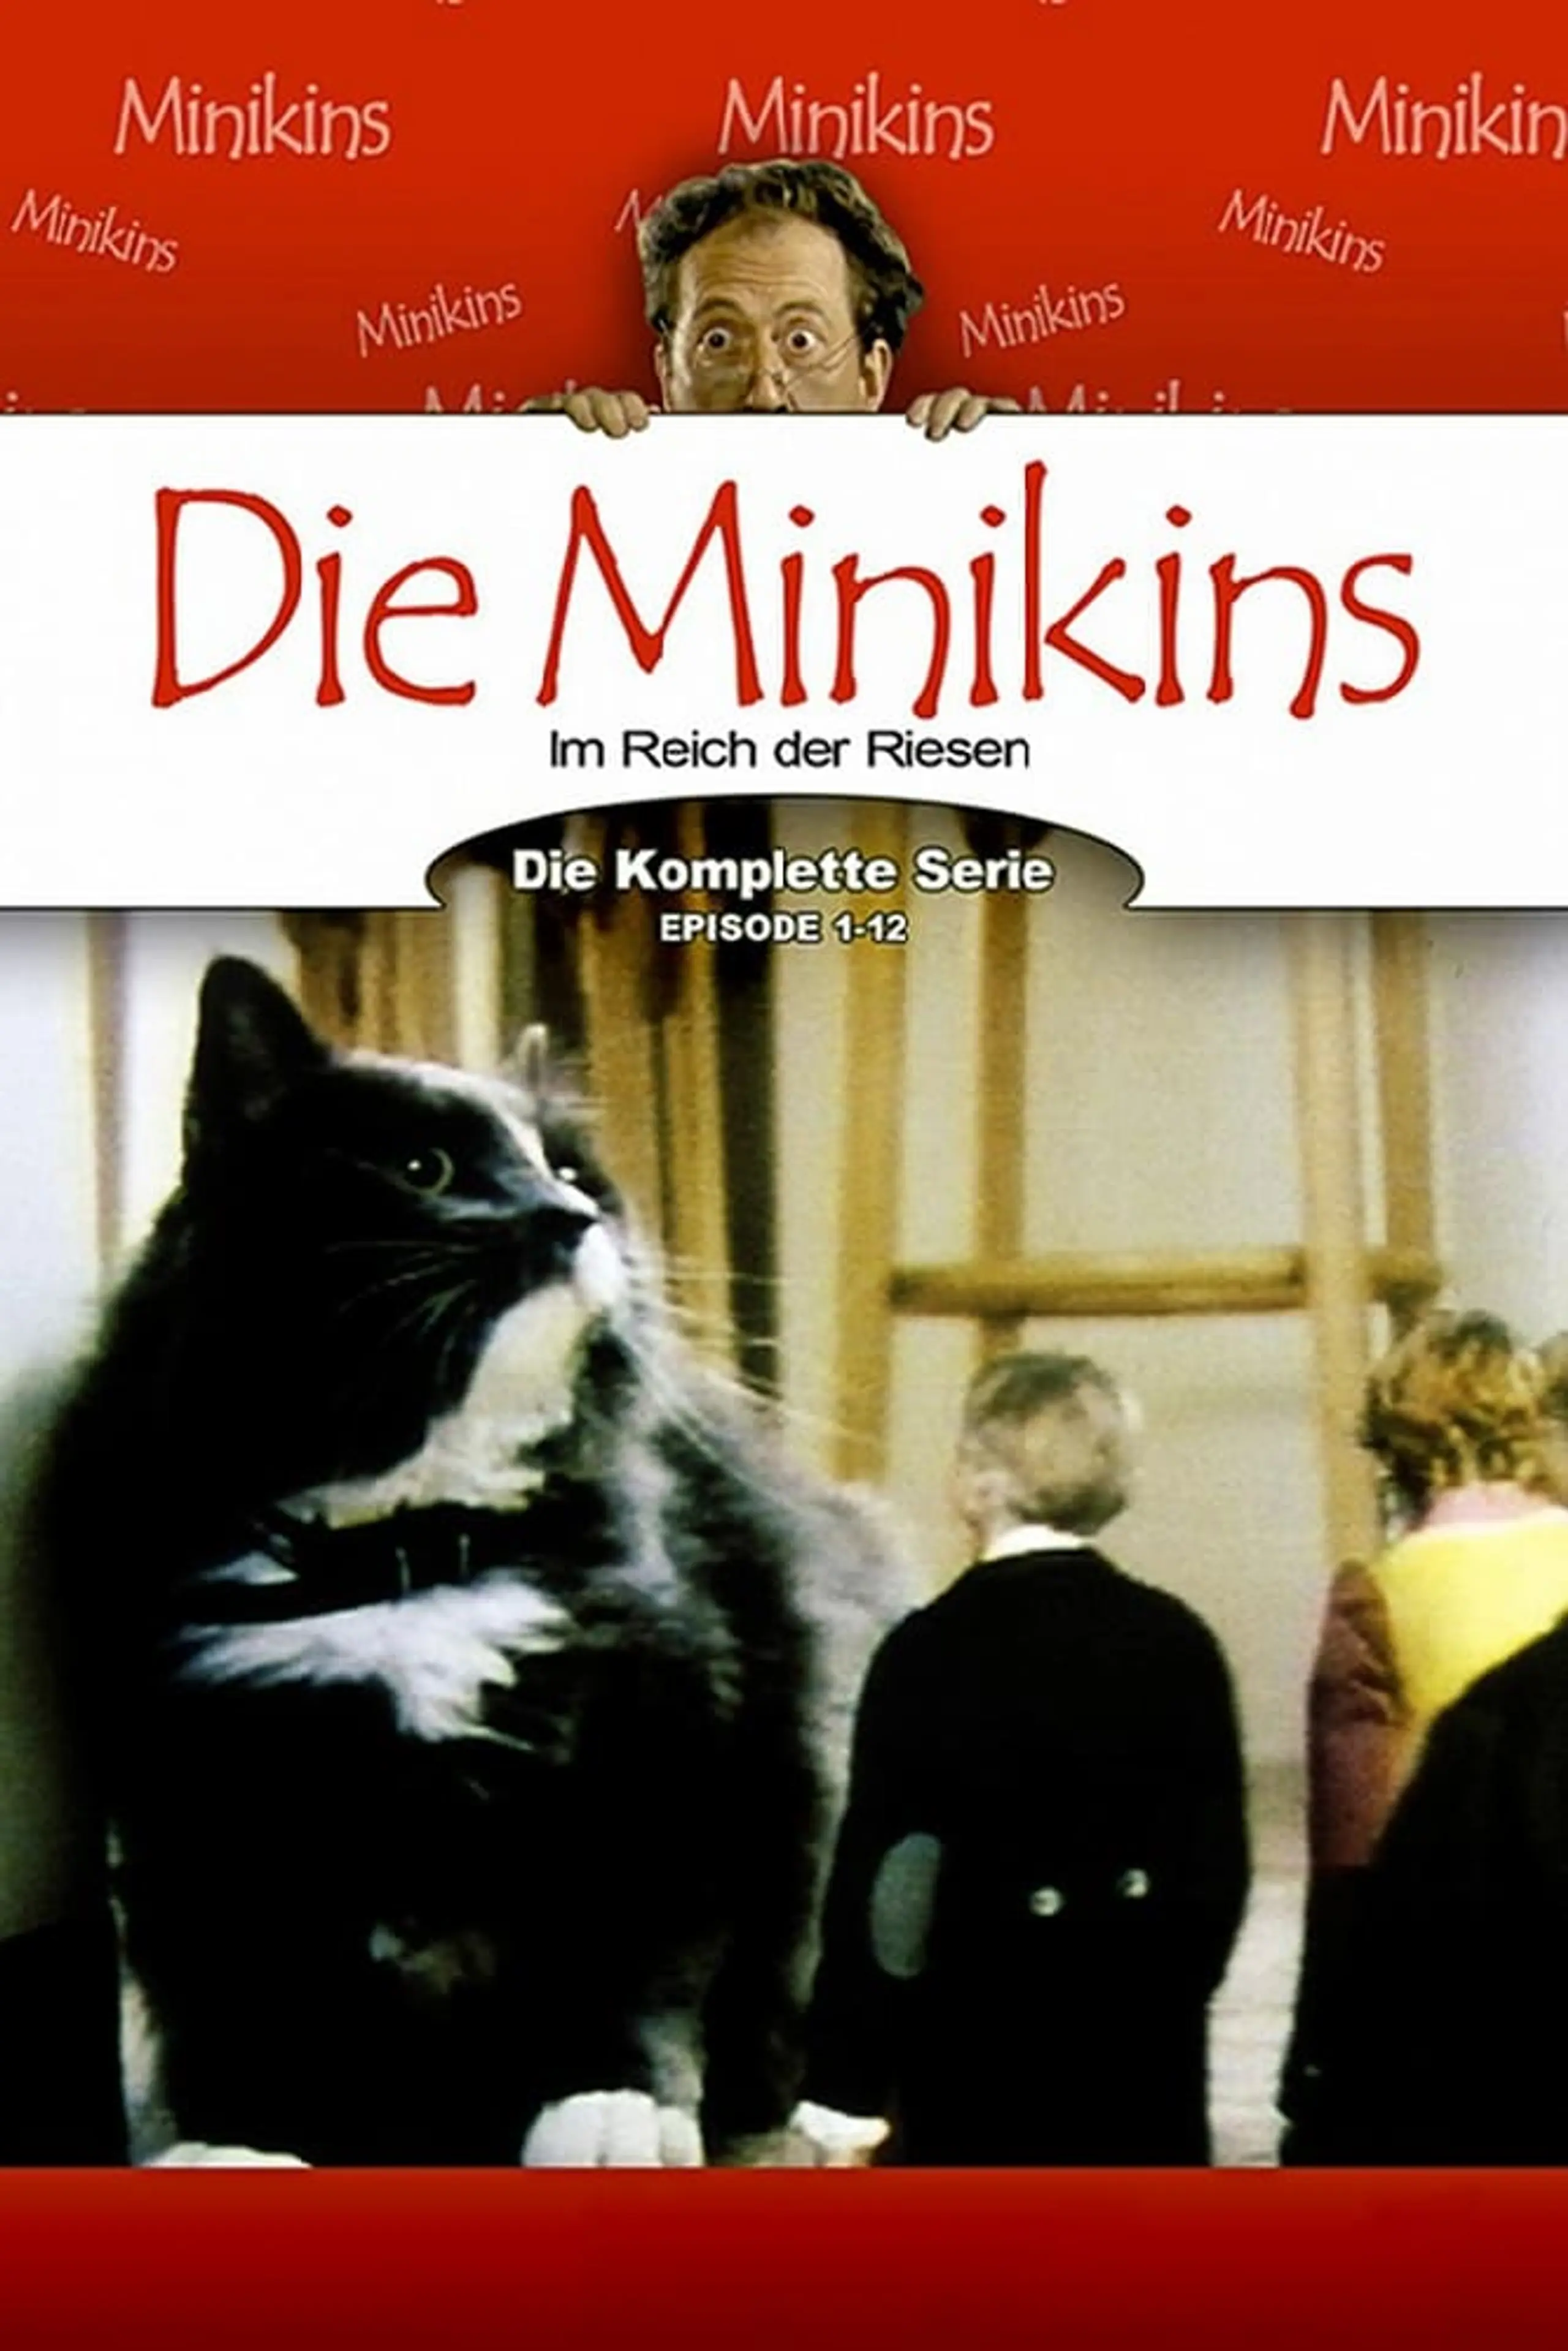 Die Minikins – Im Land der Riesen